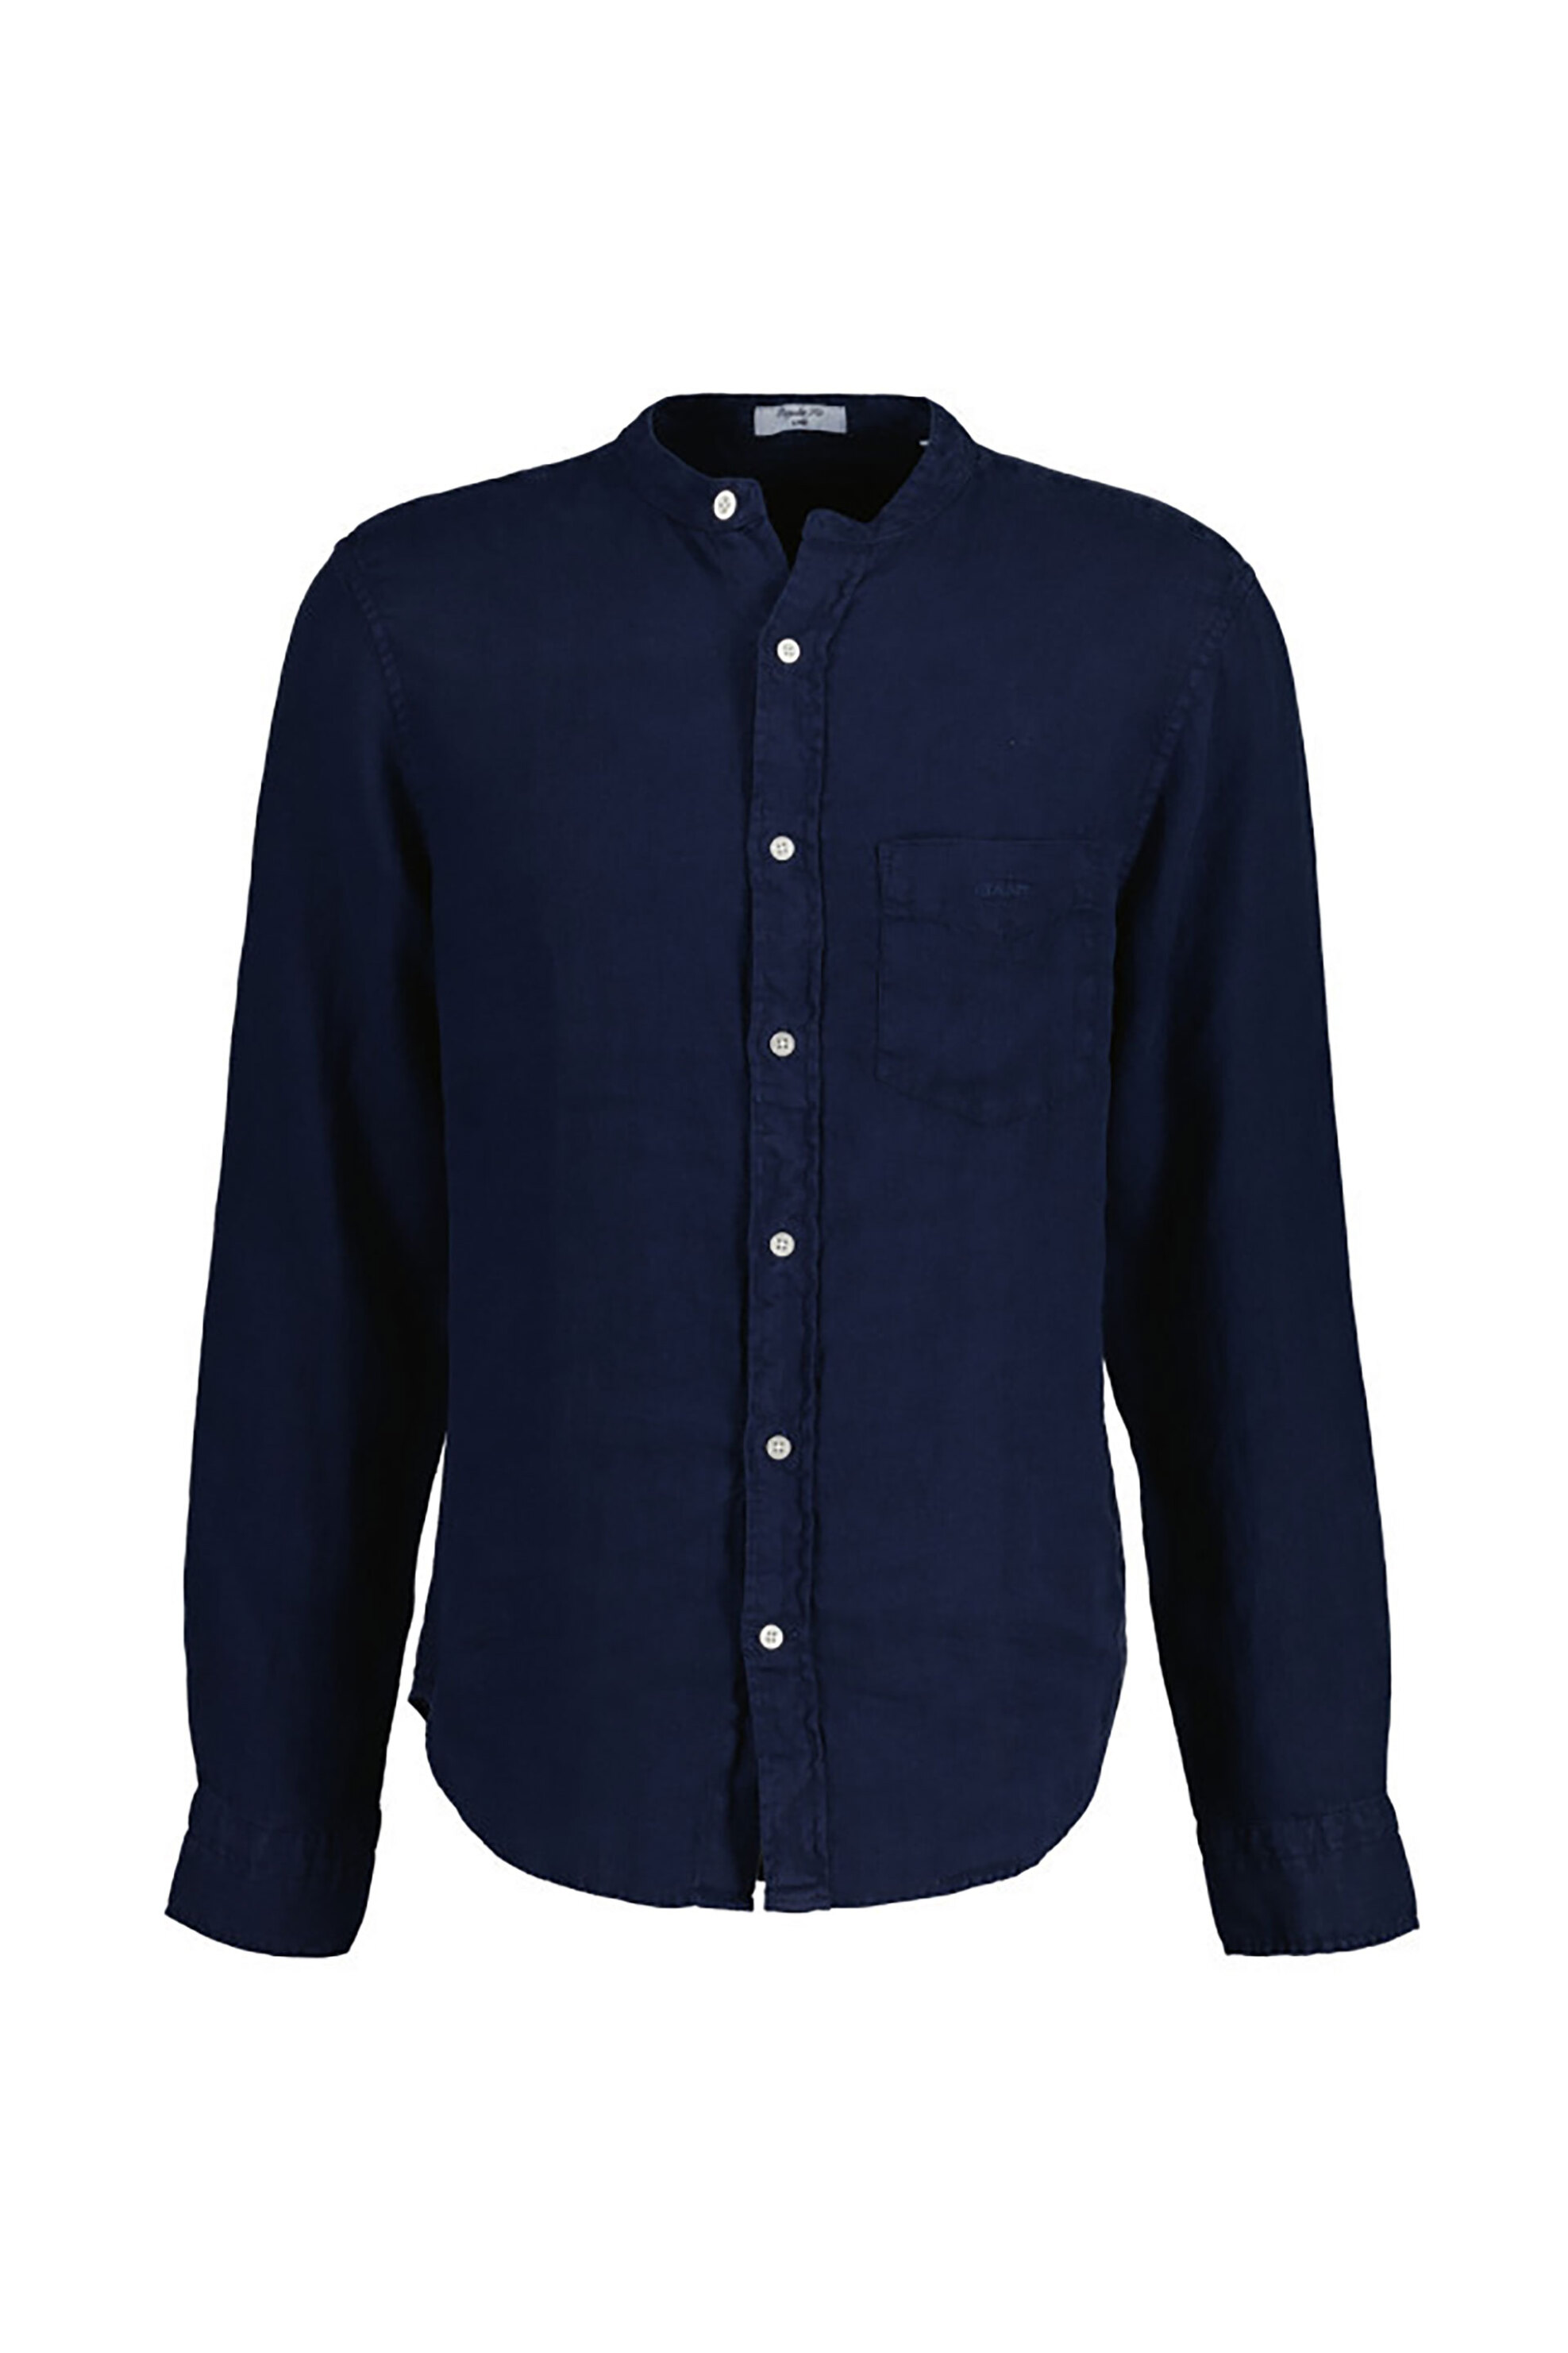 Ανδρική Μόδα > Ανδρικά Ρούχα > Ανδρικά Πουκάμισα > Ανδρικά Πουκάμισα Casual Gant ανδρικό λινό πουκάμισο με μάο γιακά Regular Fit - 3240122 Μπλε Σκούρο